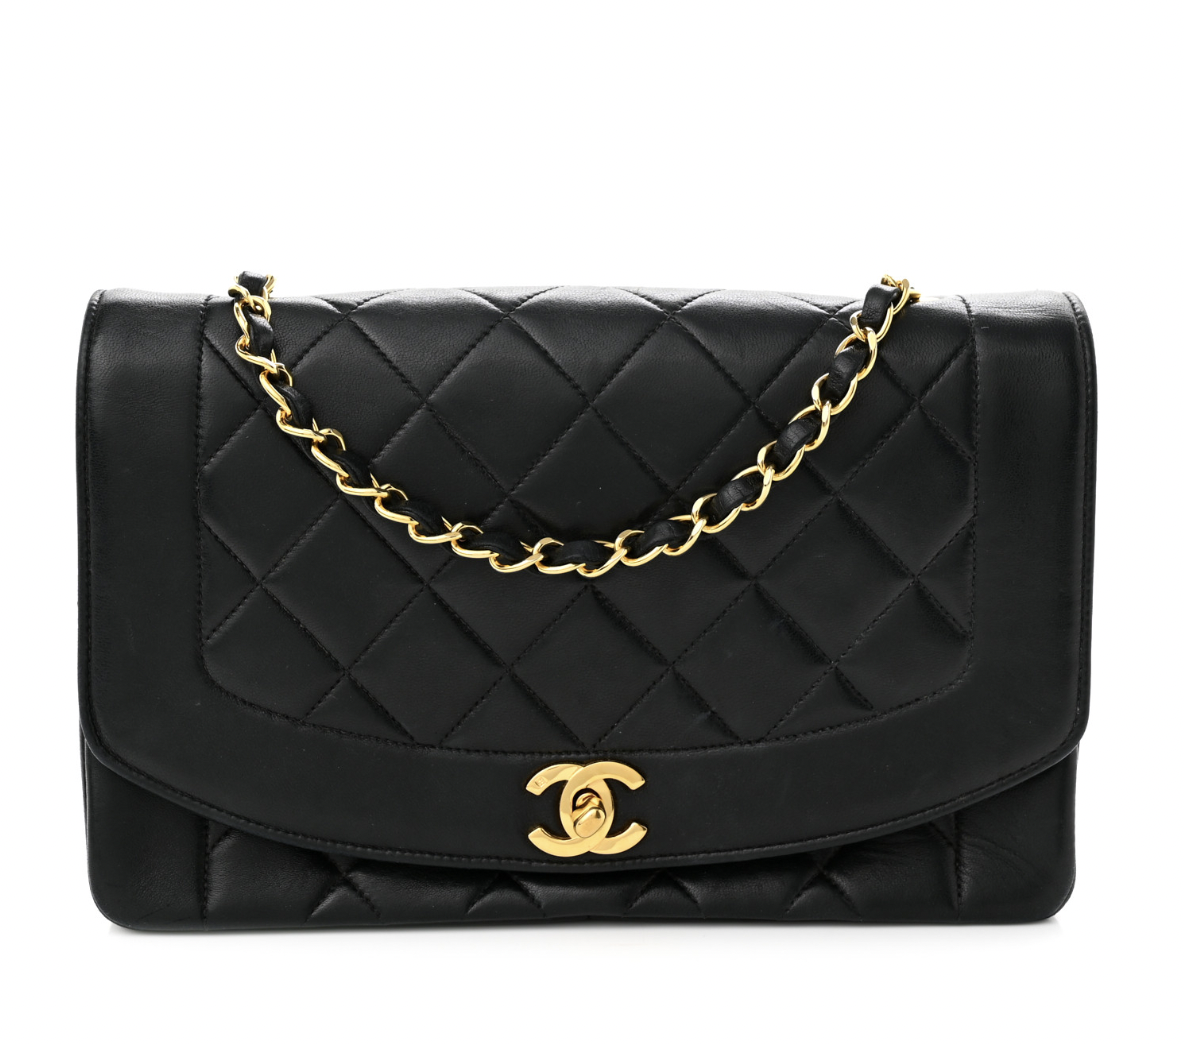 Vintage Chanel flap bag - Design Consigned